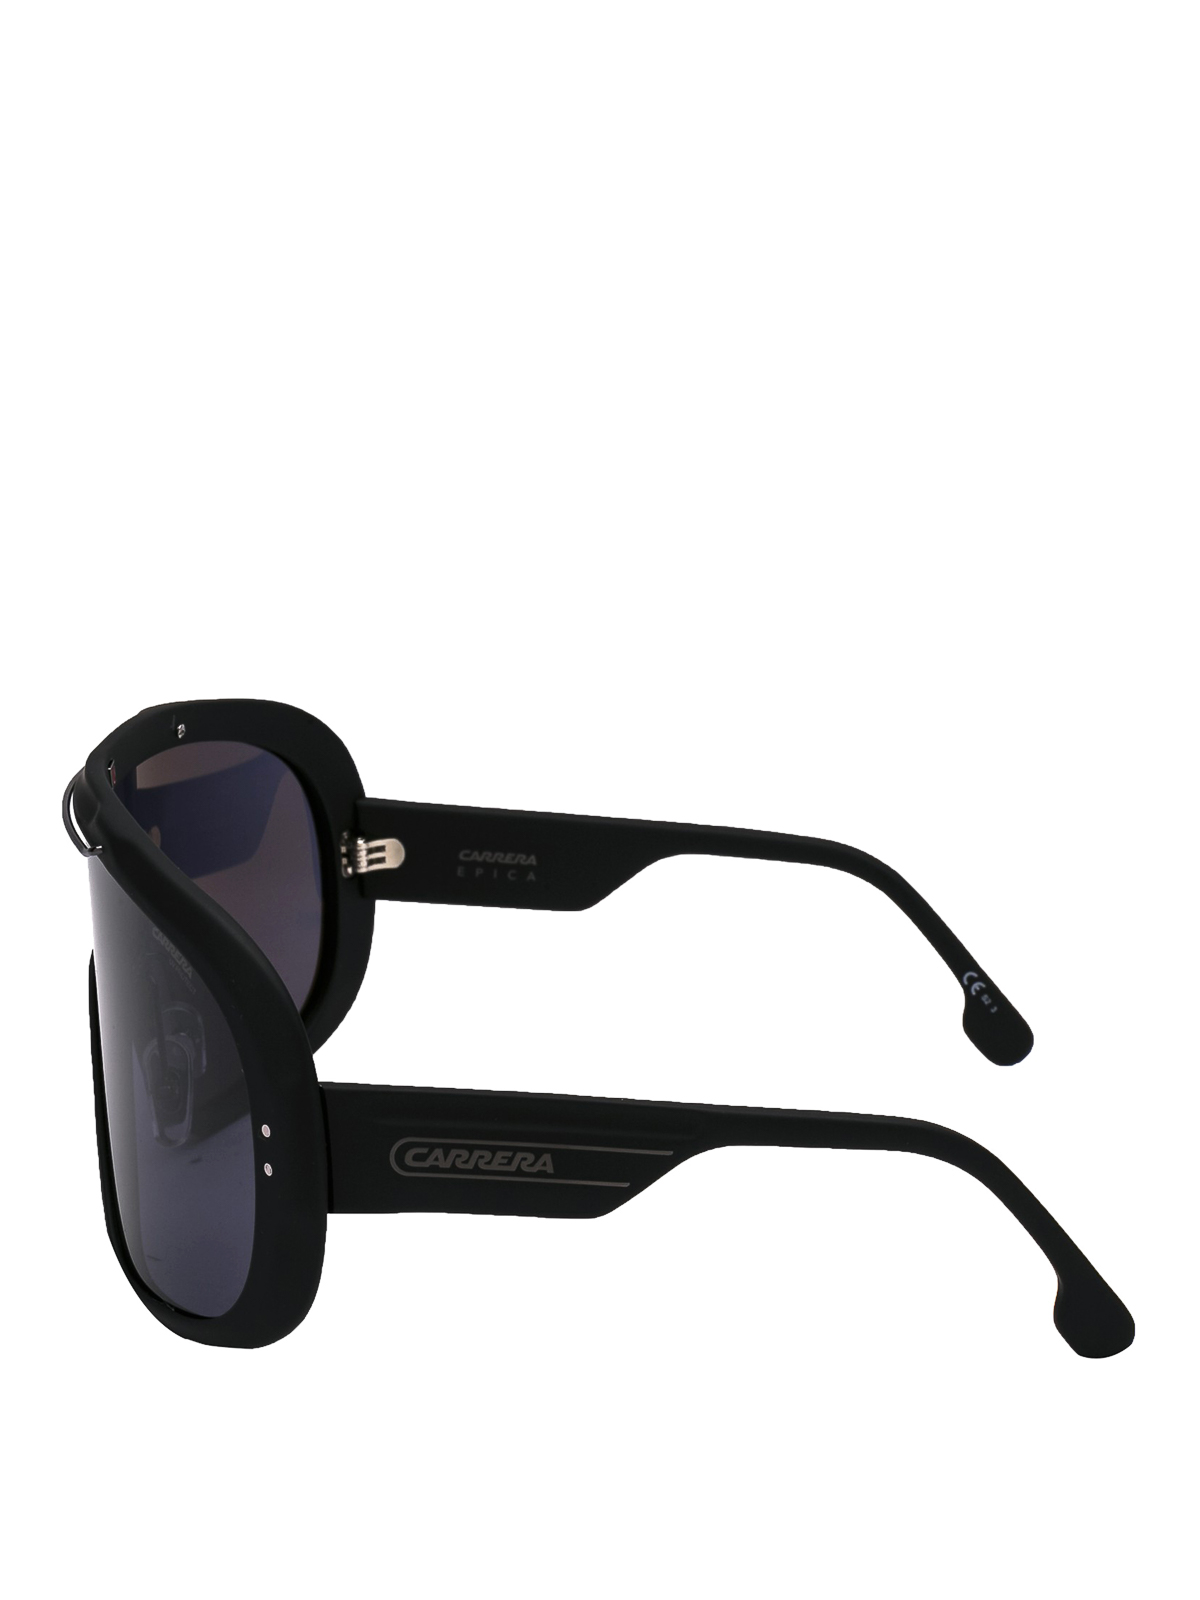 Púrpura Descuidado Grave Gafas de sol Carrera - Gafas De Sol - Epica - CARRERAEPICA990032K